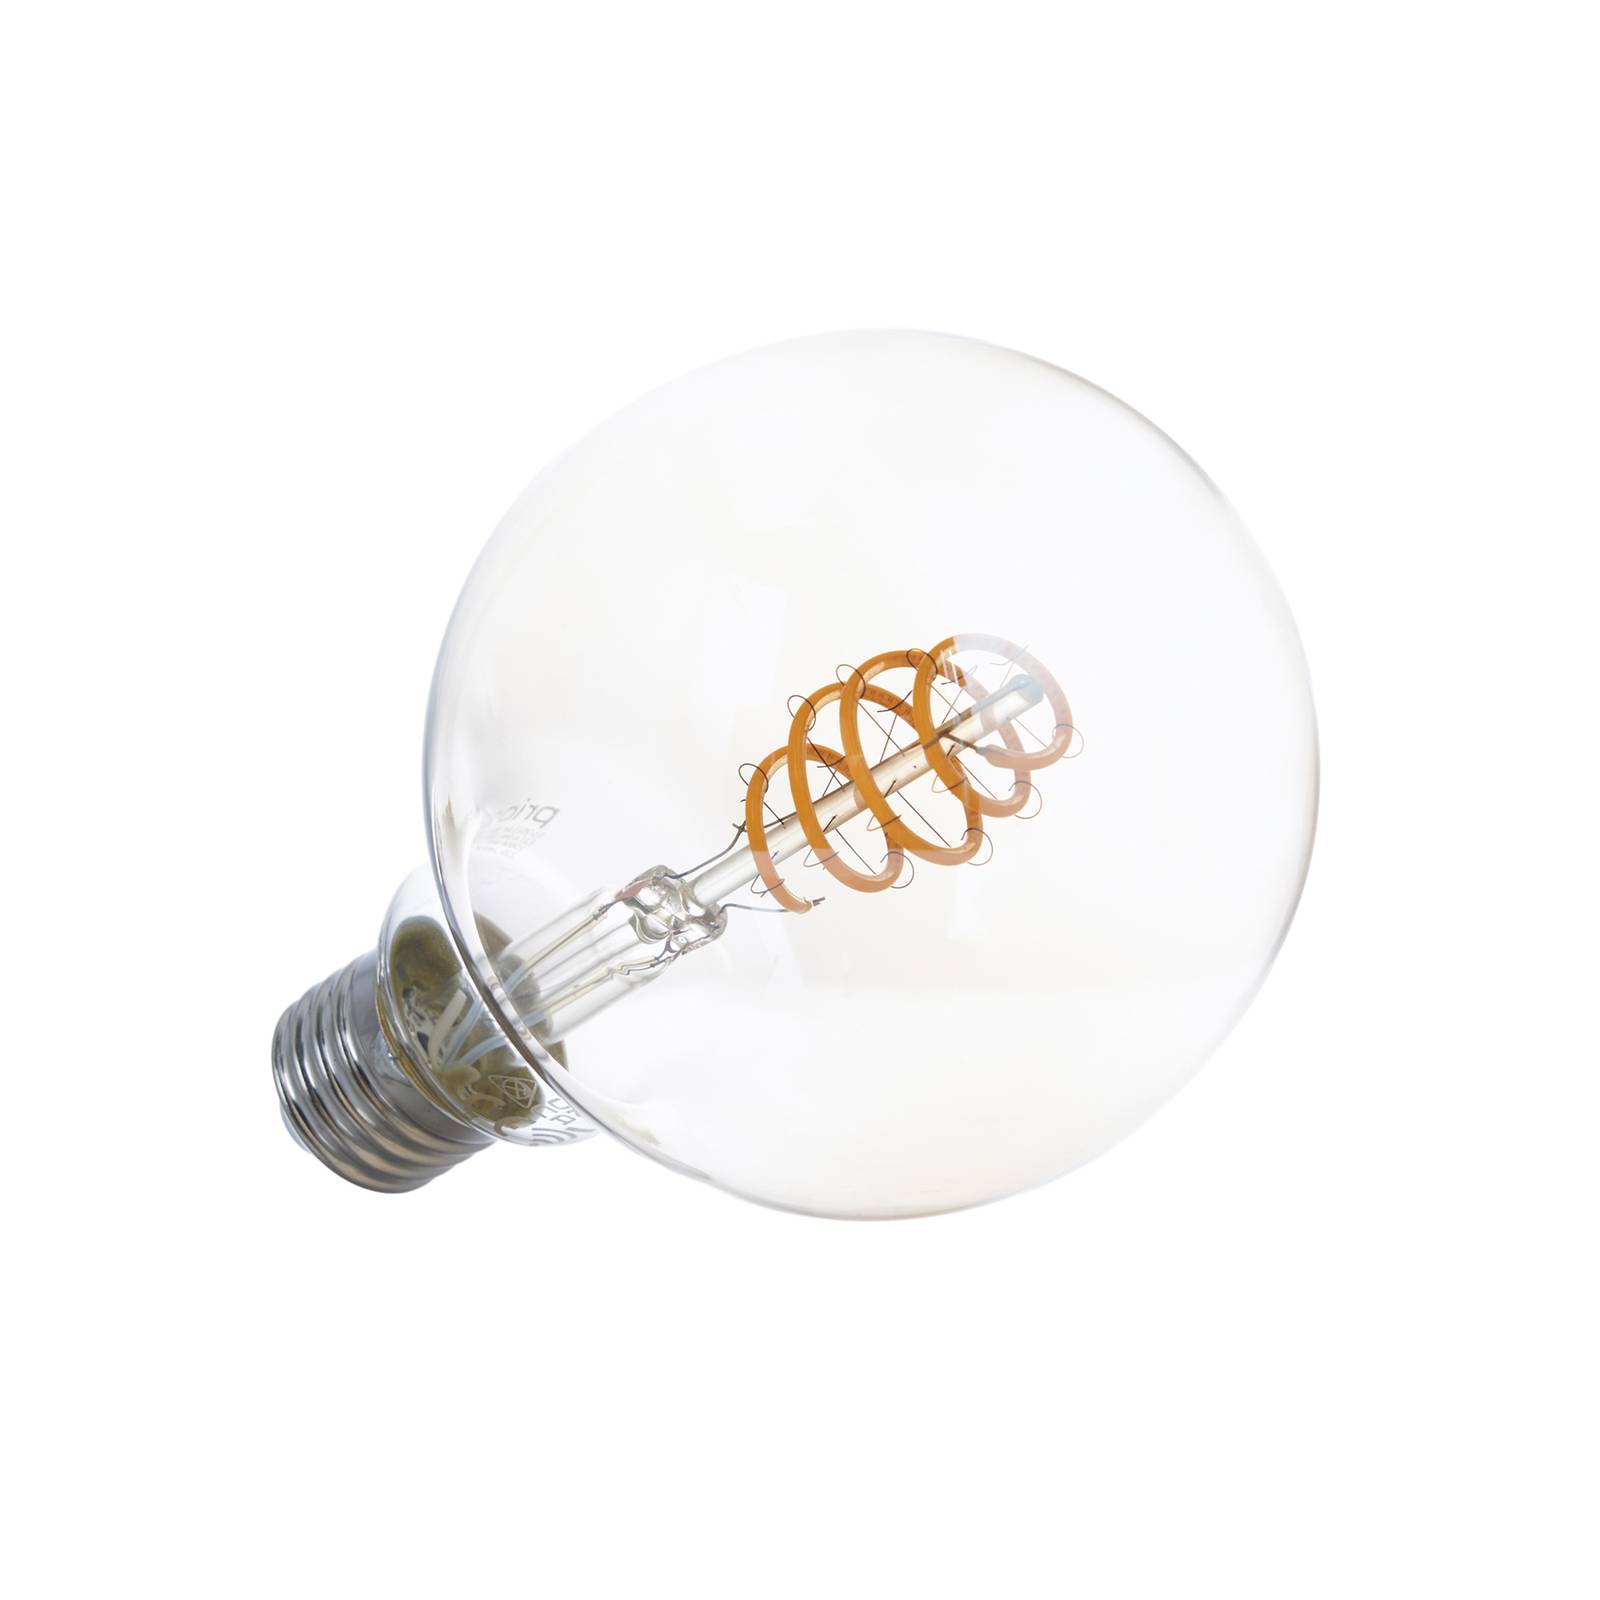 Smart LED-pære E27 G95 4,9 W WLAN ravgul